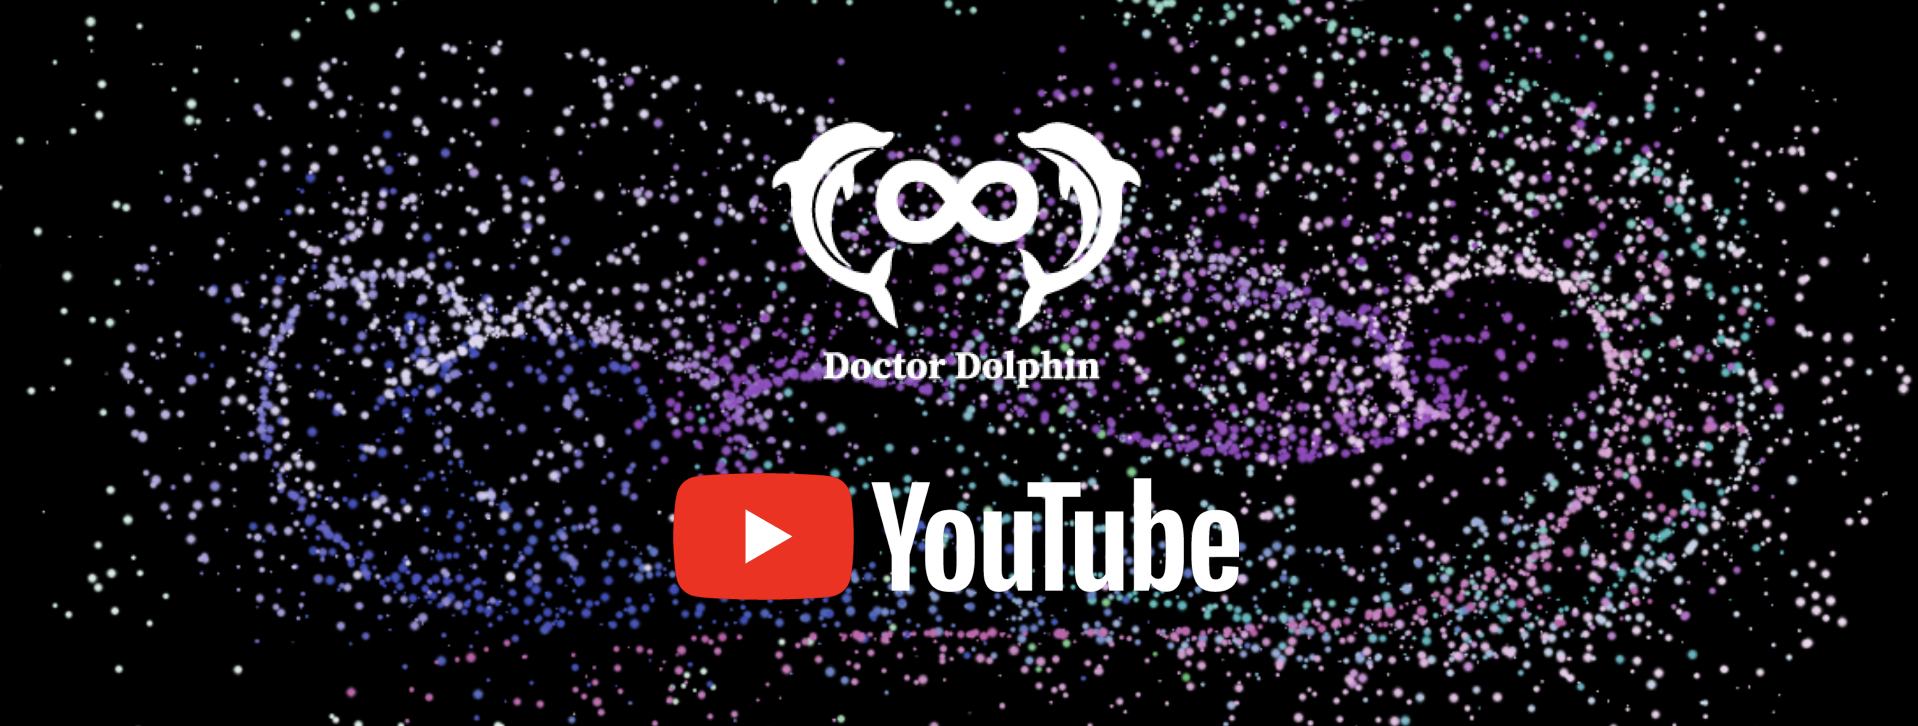 ドクタードルフィン 松久正 Youtube 公式チャンネル